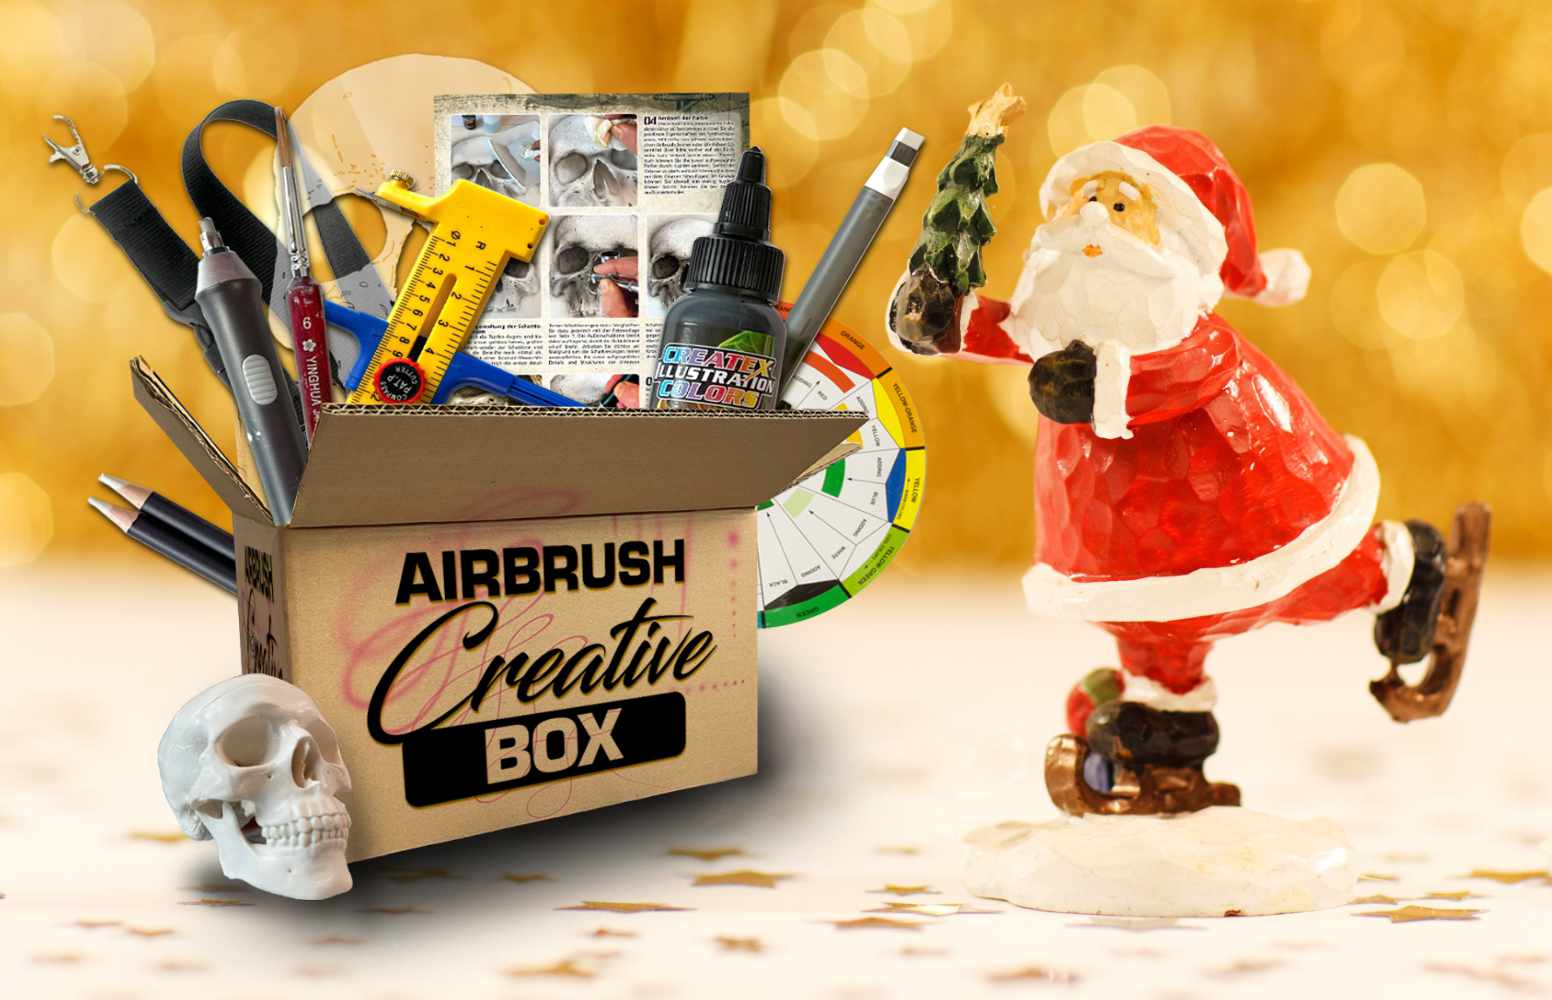 DAS Weihnachtsgeschenk 2021: Die Airbrush Creative Box